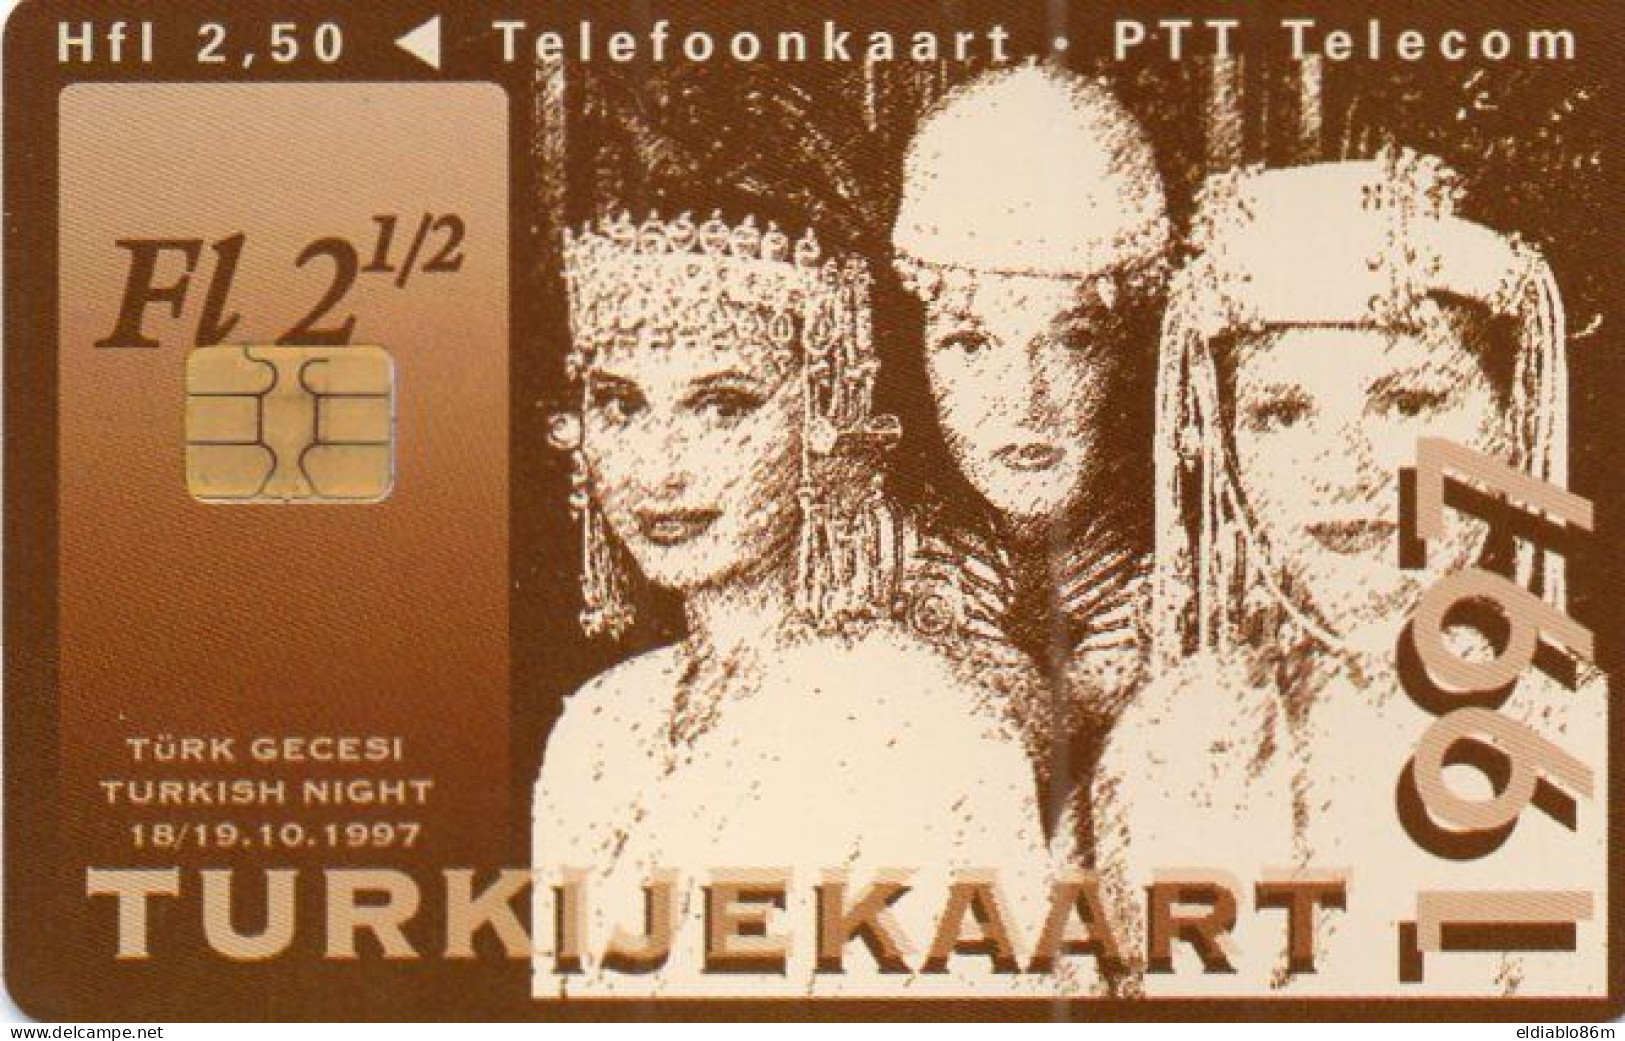 NETHERLANDS - CHIP CARD - CKD114 - TURKIJEKAART - TURKISH NIGHT - WOMAN - Pubbliche